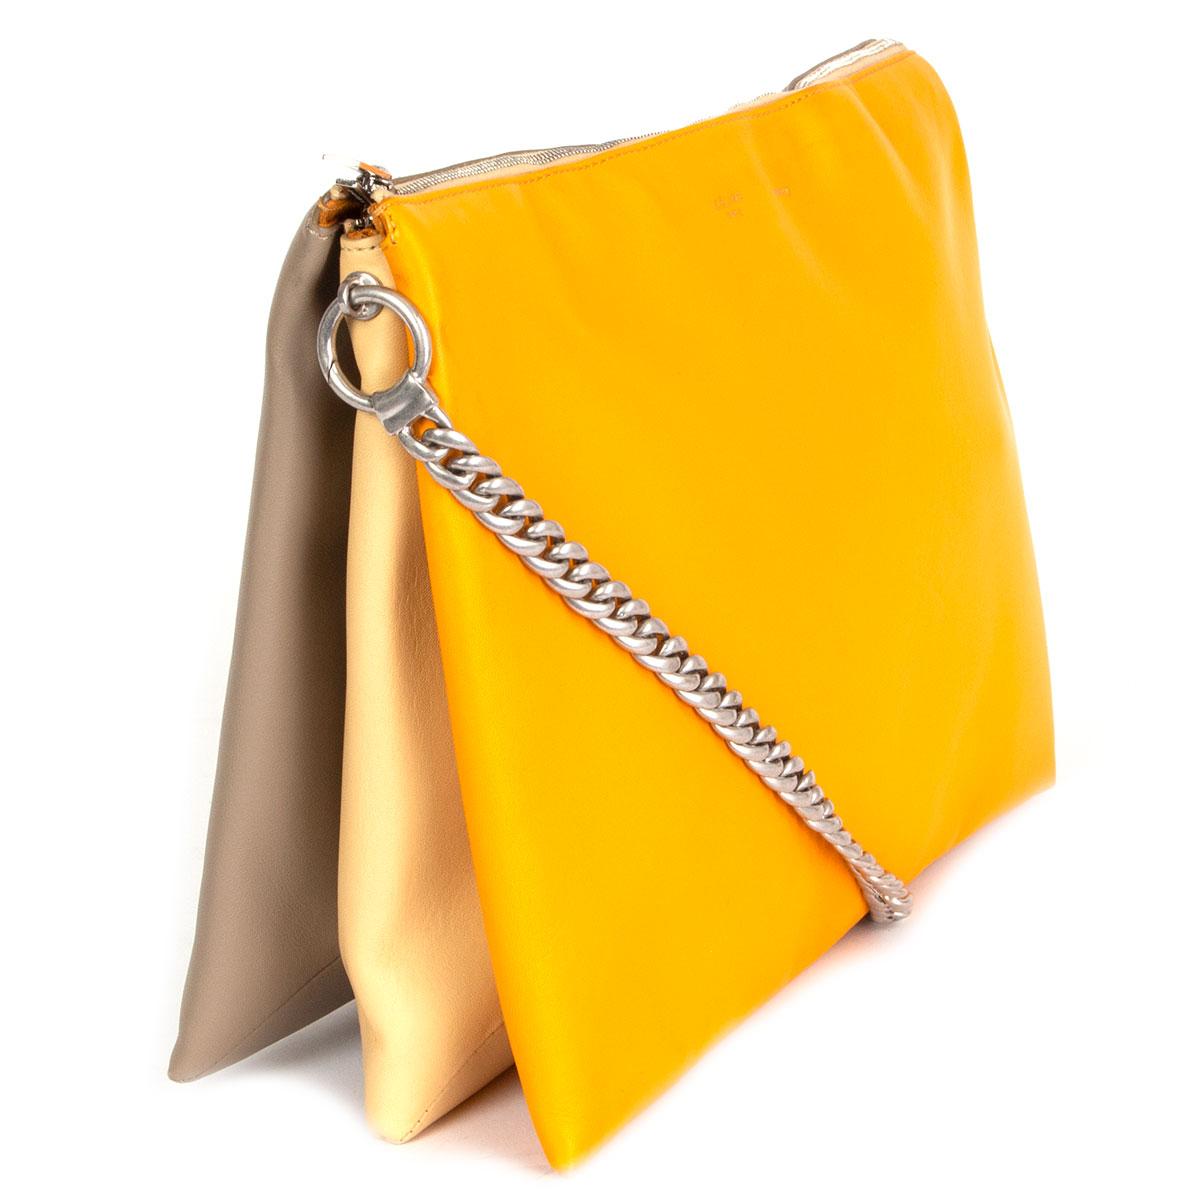 100% authentische Céline 'Soft Trio Chain' Umhängetasche aus glattem orangefarbenem, vanillefarbenem und taupefarbenem Kalbsleder, die sich mit einem Reißverschluss an der Oberseite öffnen lässt. Gefüttert mit orangefarbenem Wildleder und unterteilt